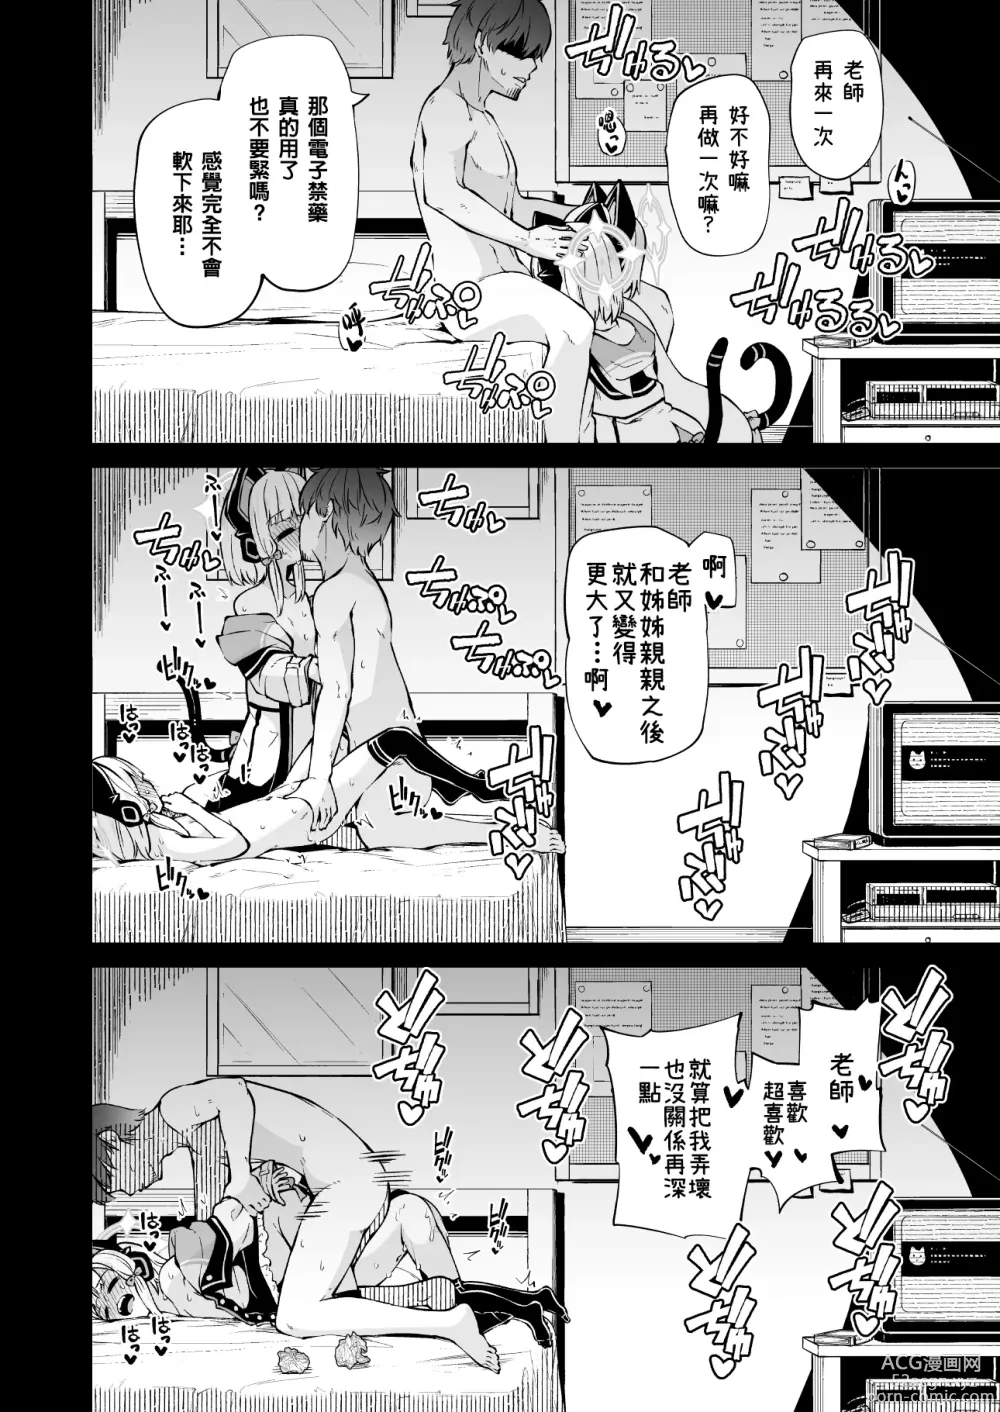 Page 26 of doujinshi Momoiro no Kataomoi